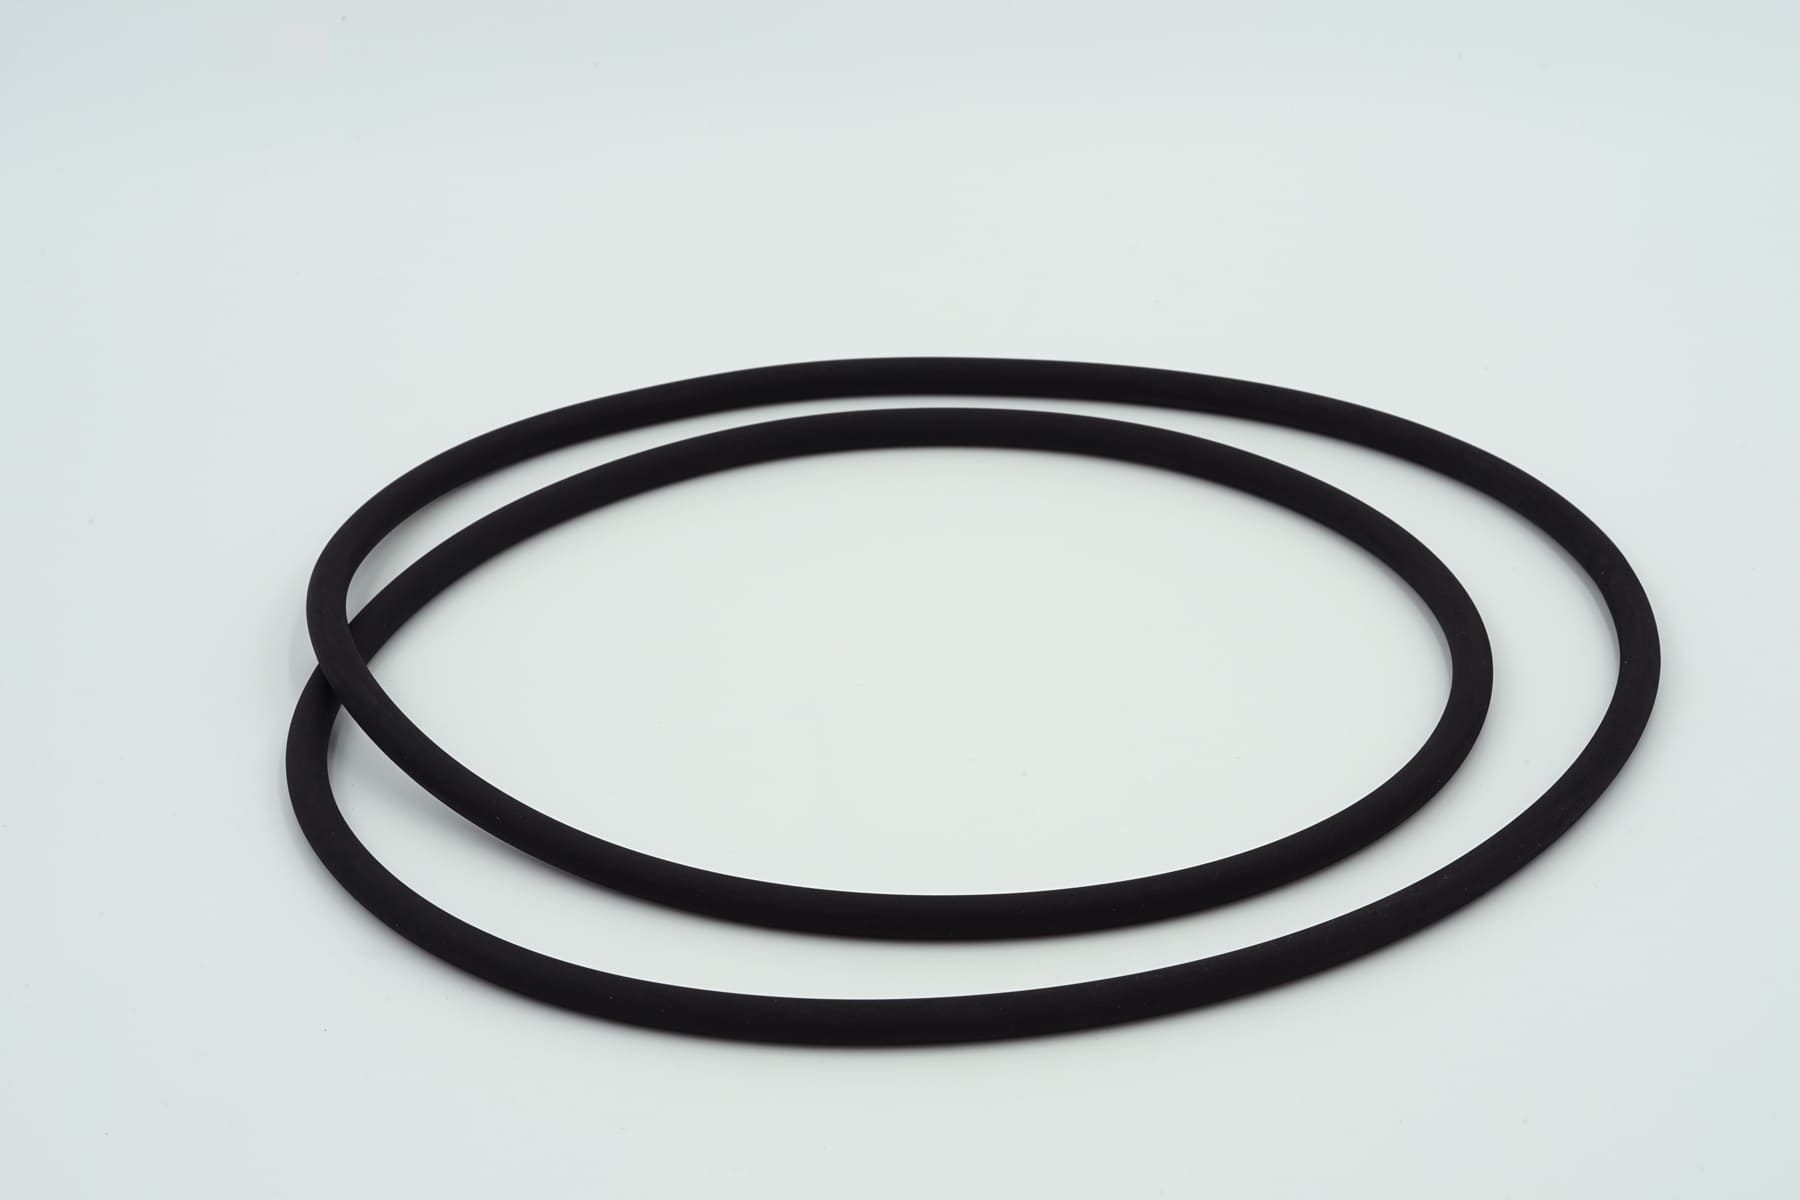 Ø400 Vacuum Chamber O-rings